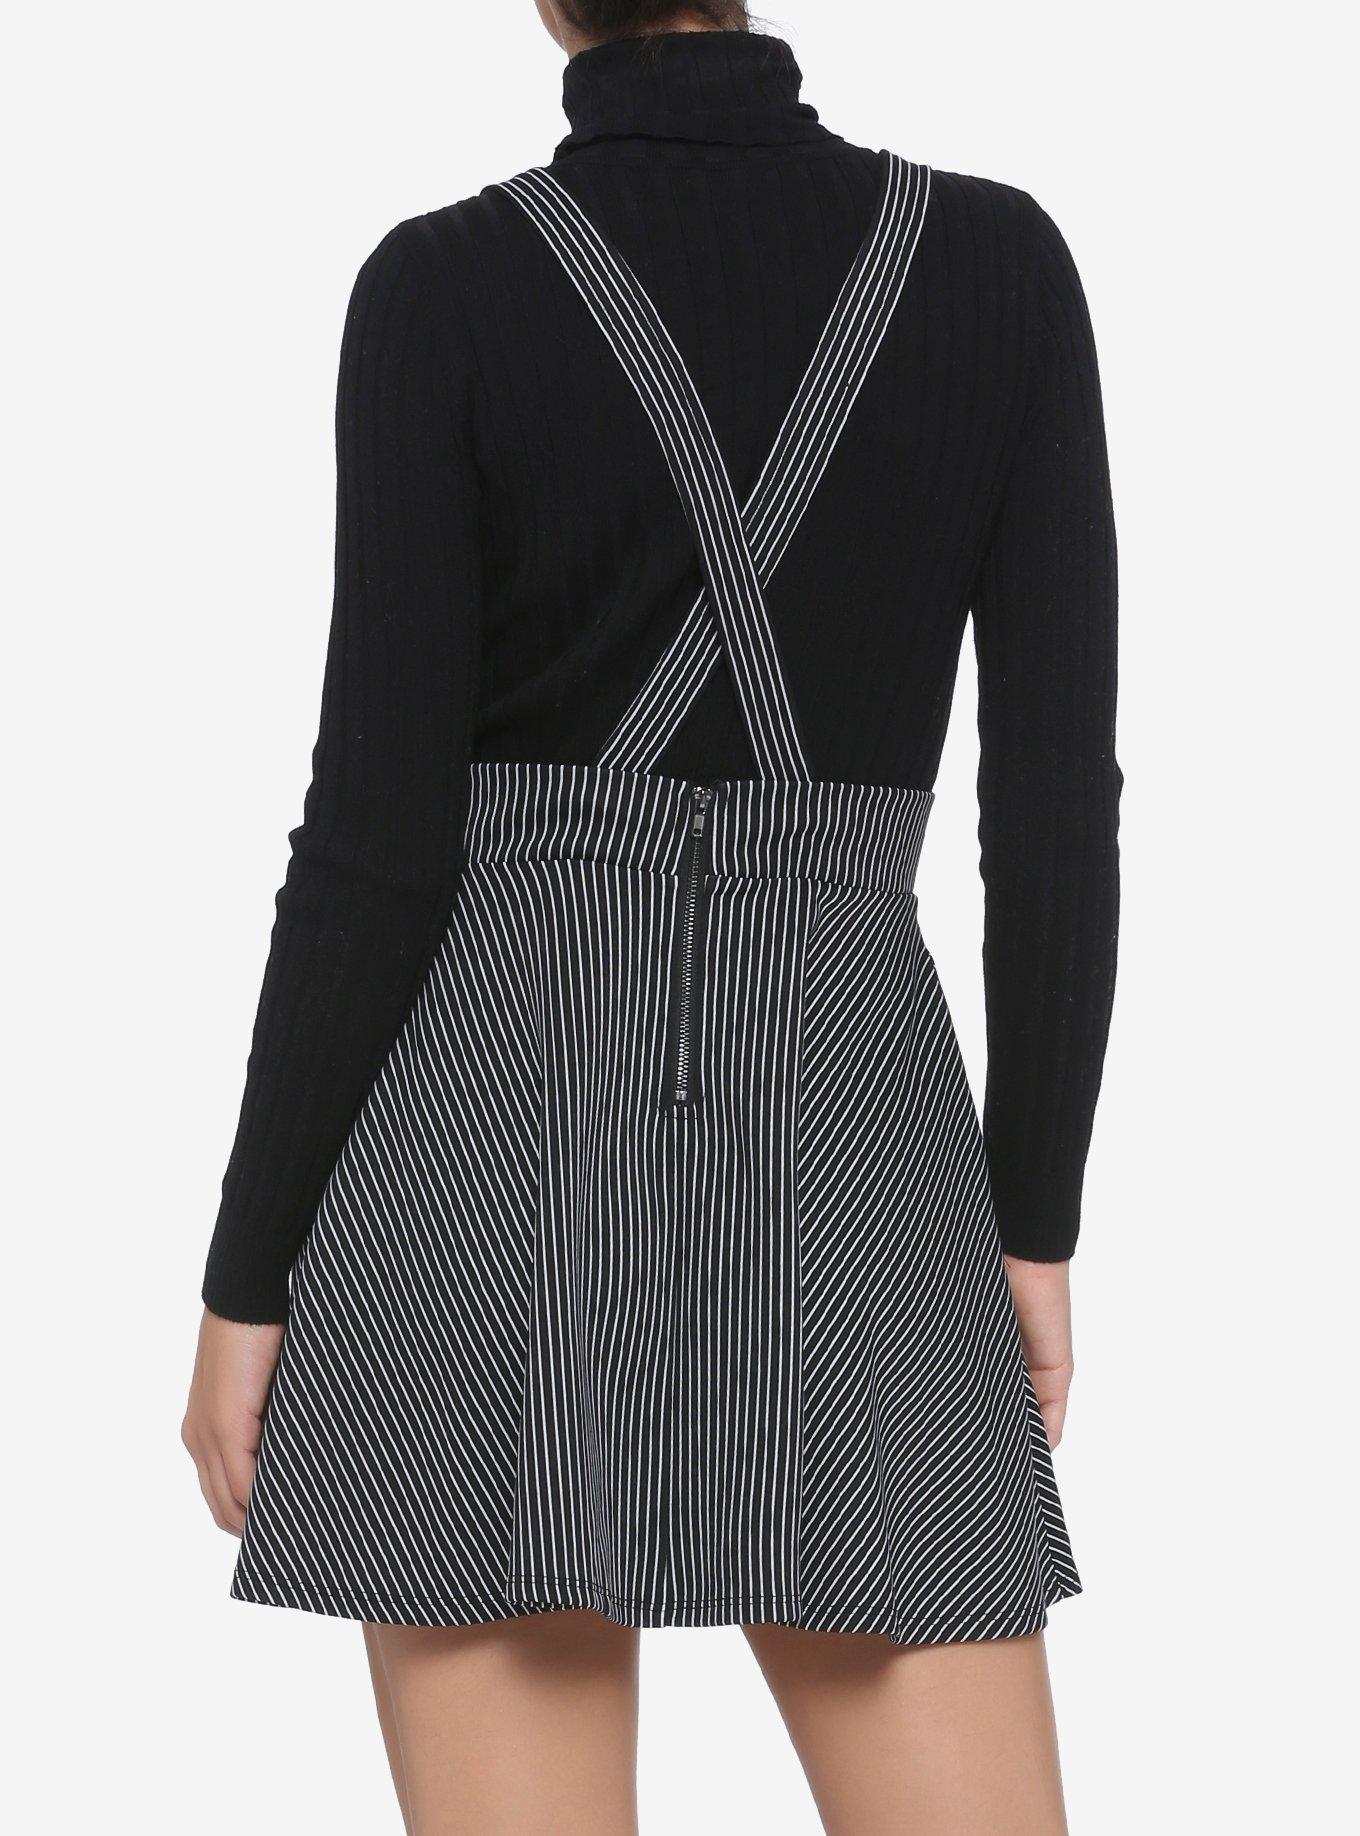 Black & White Pinstripe Suspender Skirt, BLACK  WHITE, alternate